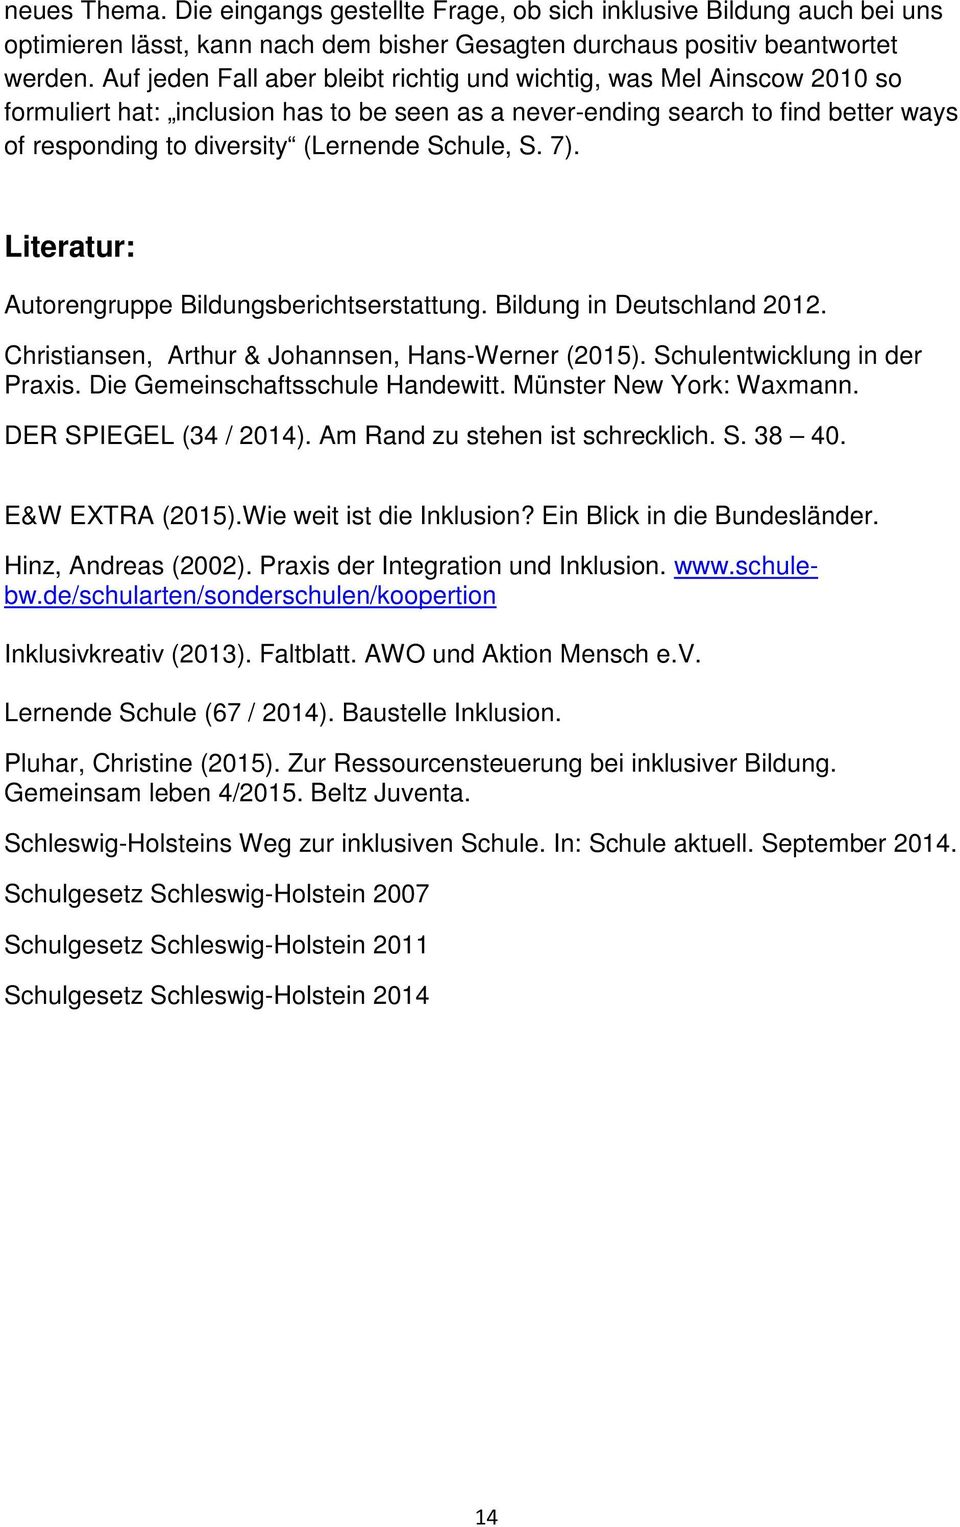 Schule, S. 7). Literatur: Autorengruppe Bildungsberichtserstattung. Bildung in Deutschland 2012. Christiansen, Arthur & Johannsen, Hans-Werner (2015). Schulentwicklung in der Praxis.